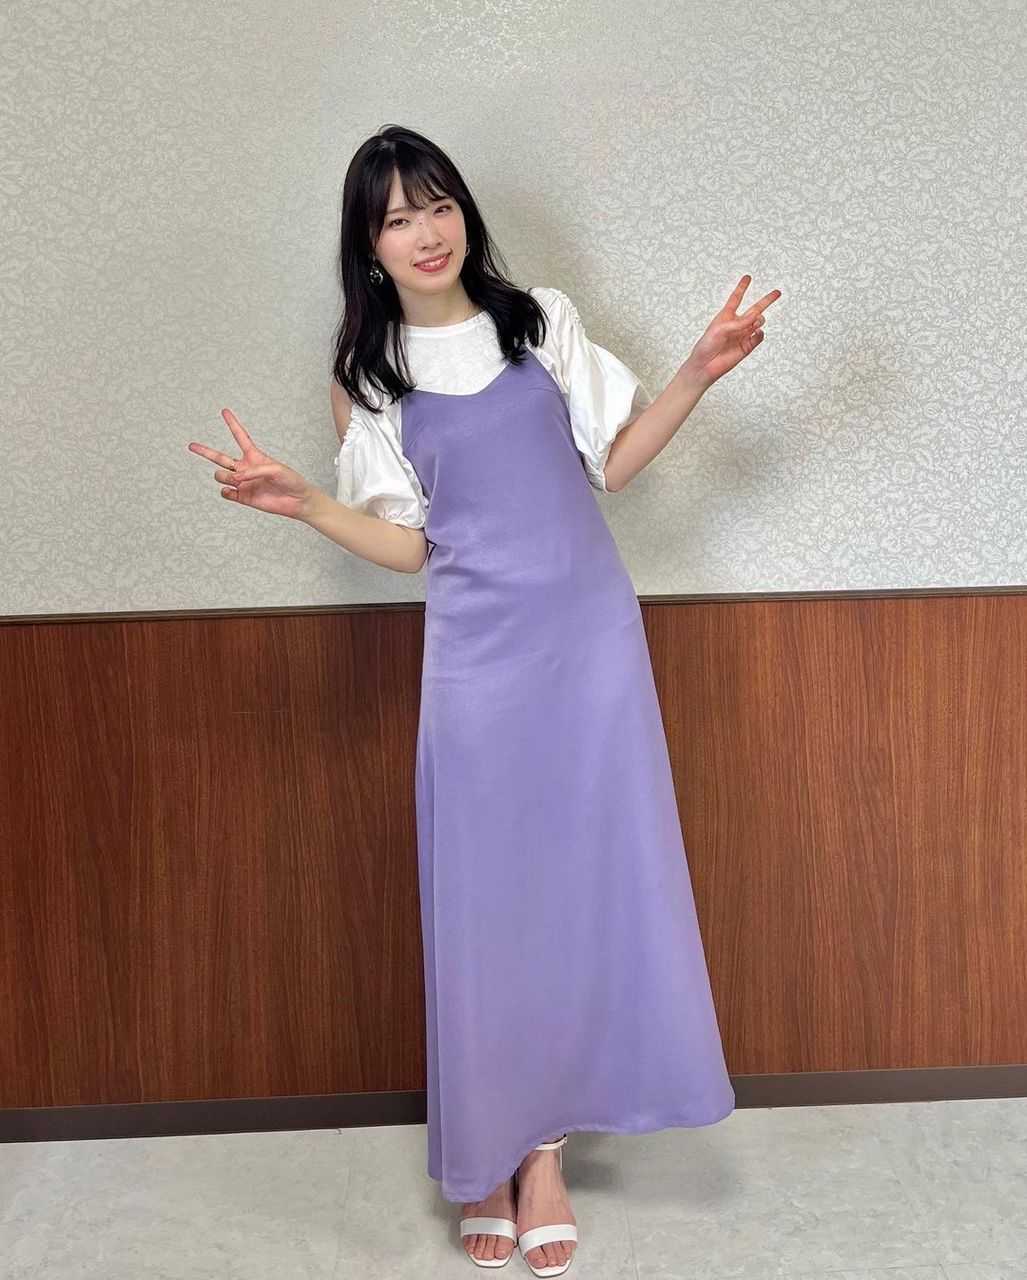 Yuiko Ohara Feet